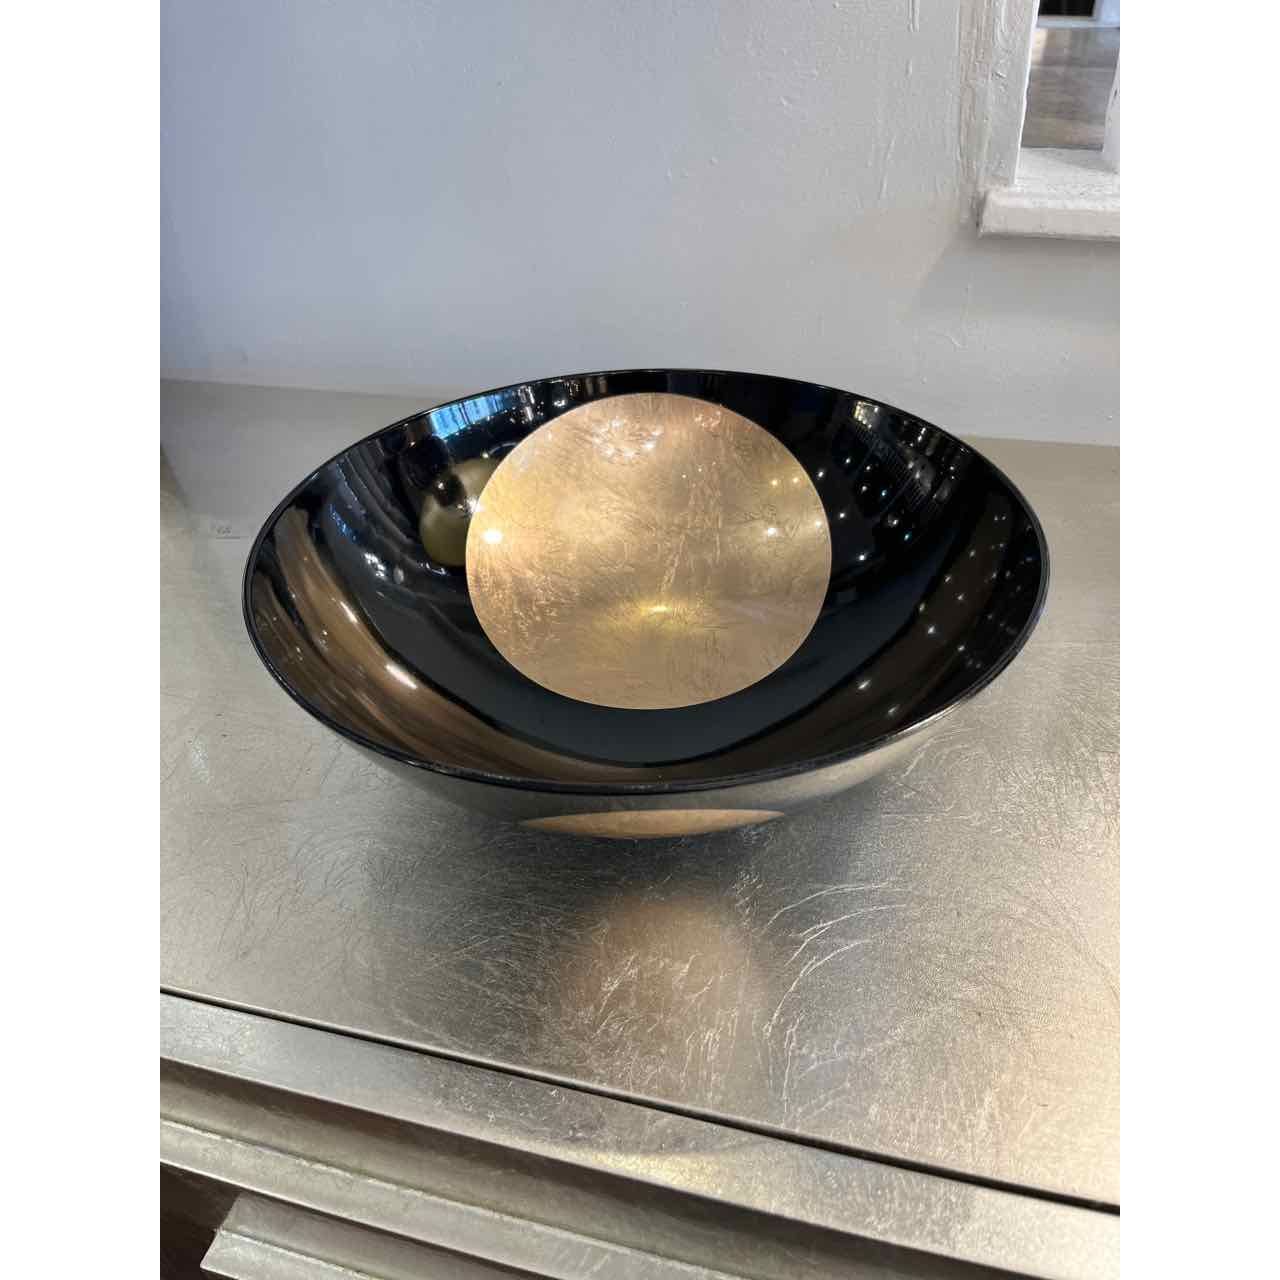 Hakuza Plastic Bowl